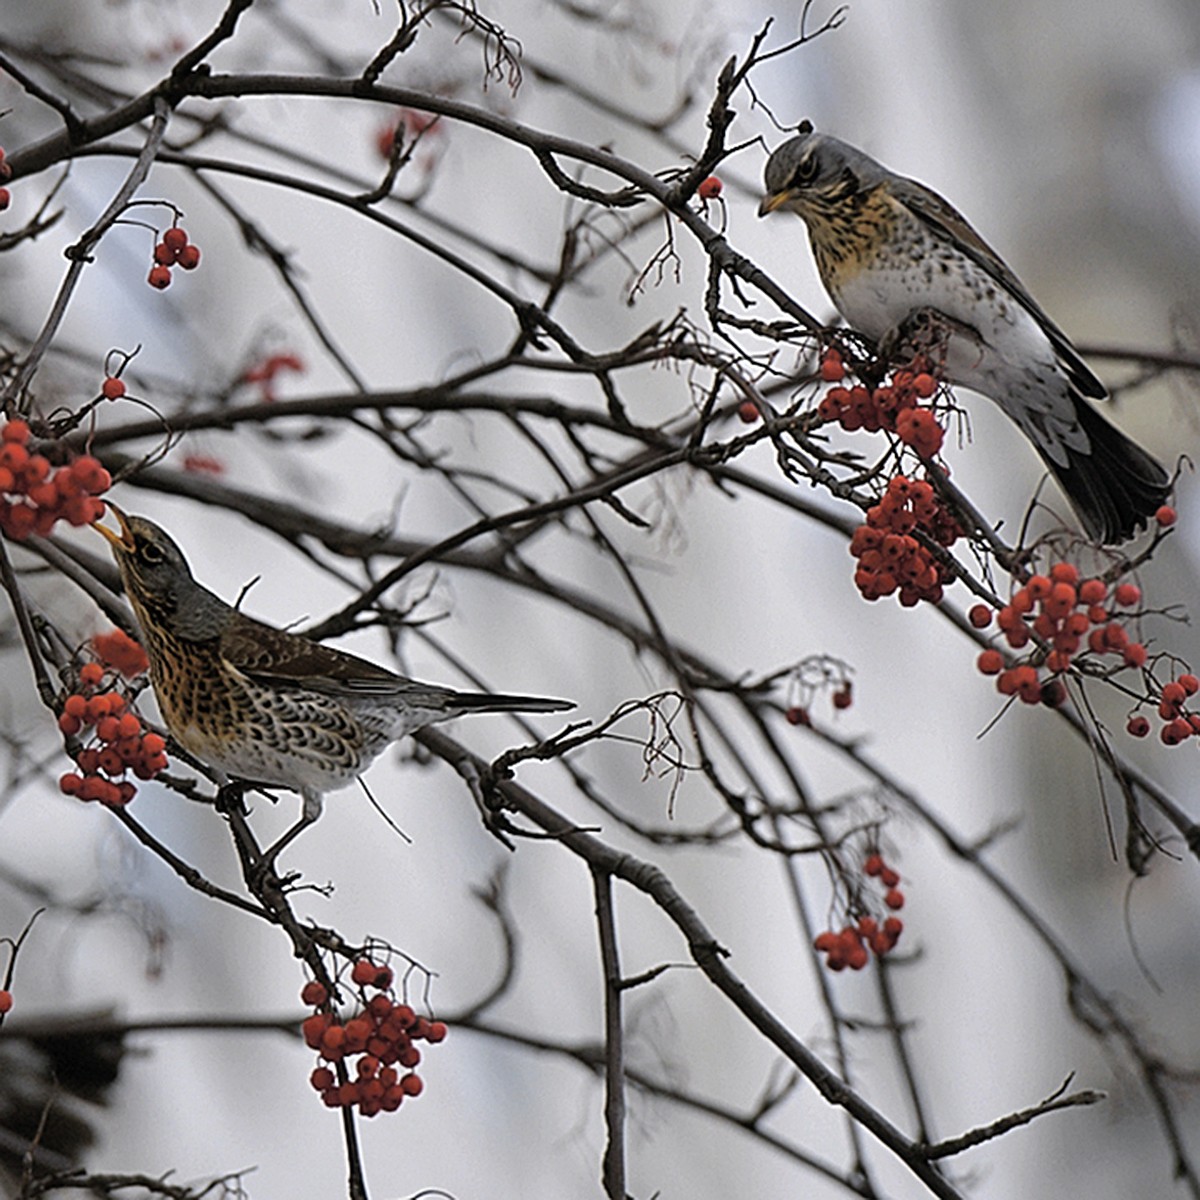 зимующие птицы москвы